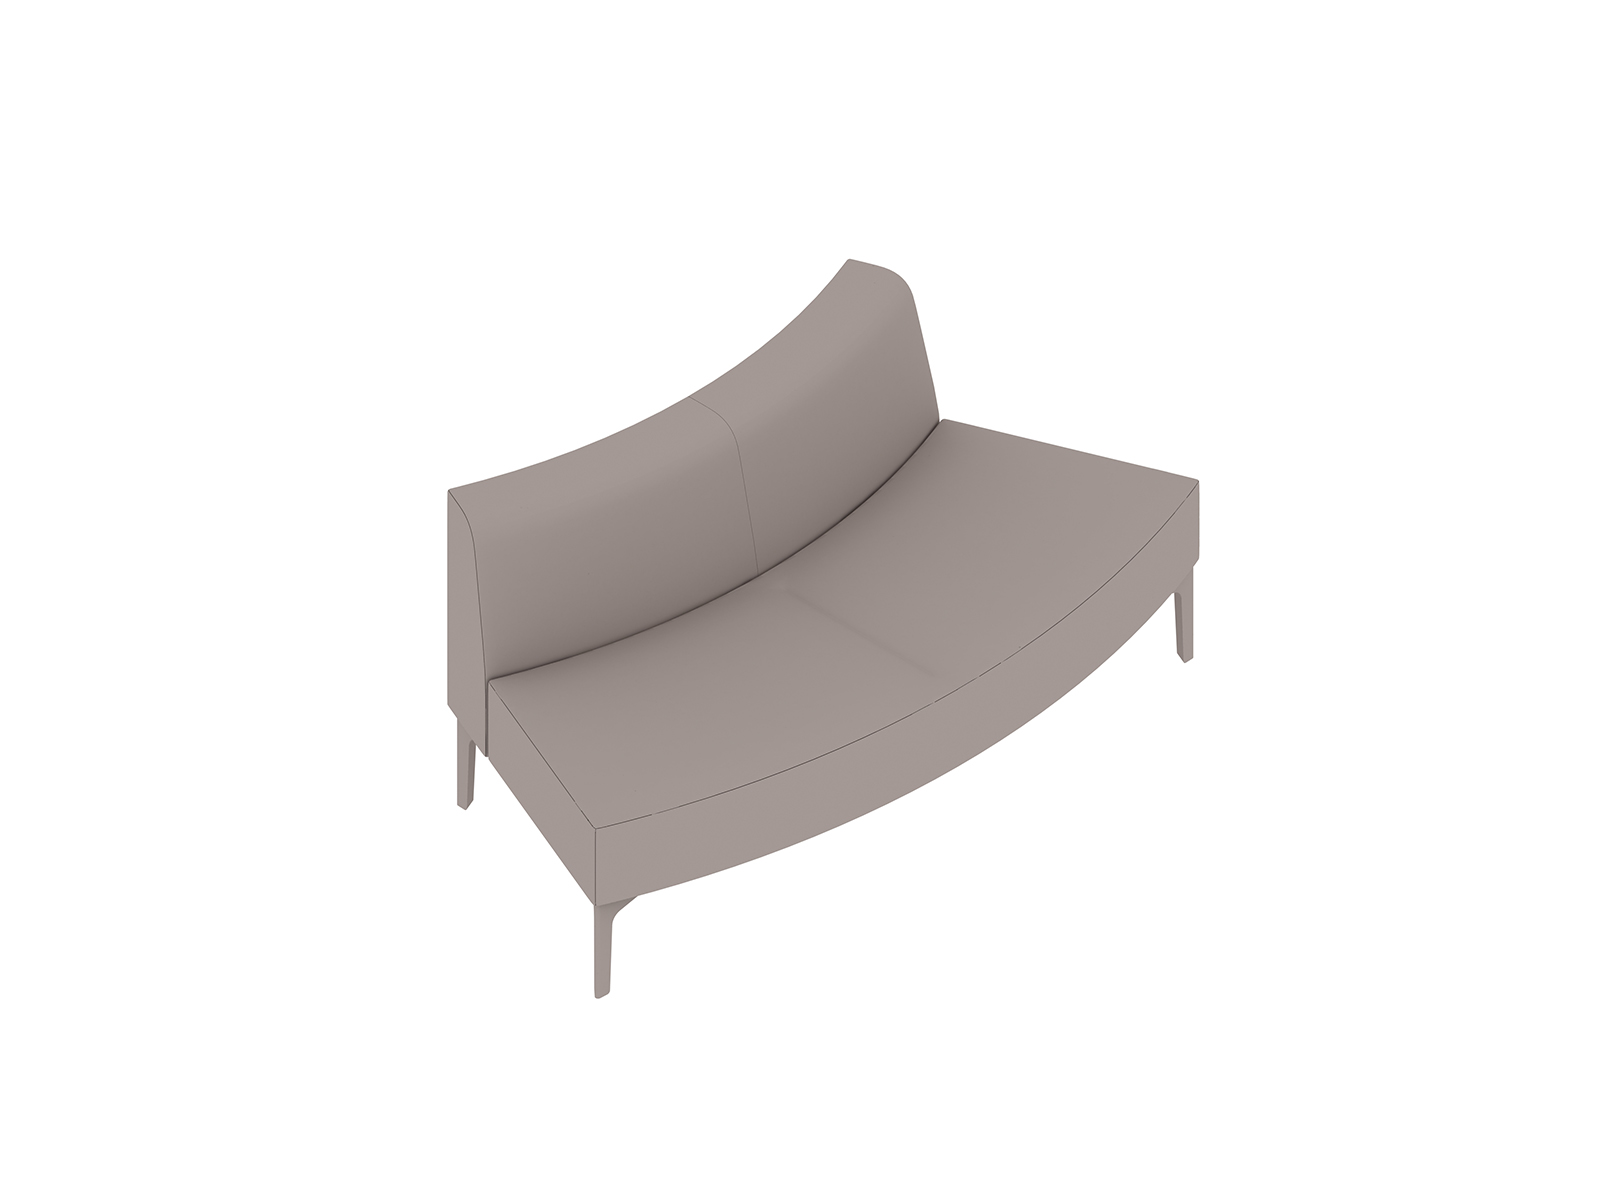 Een generieke rendering - Symbol modulaire stoelen – buitenboog 45 graden